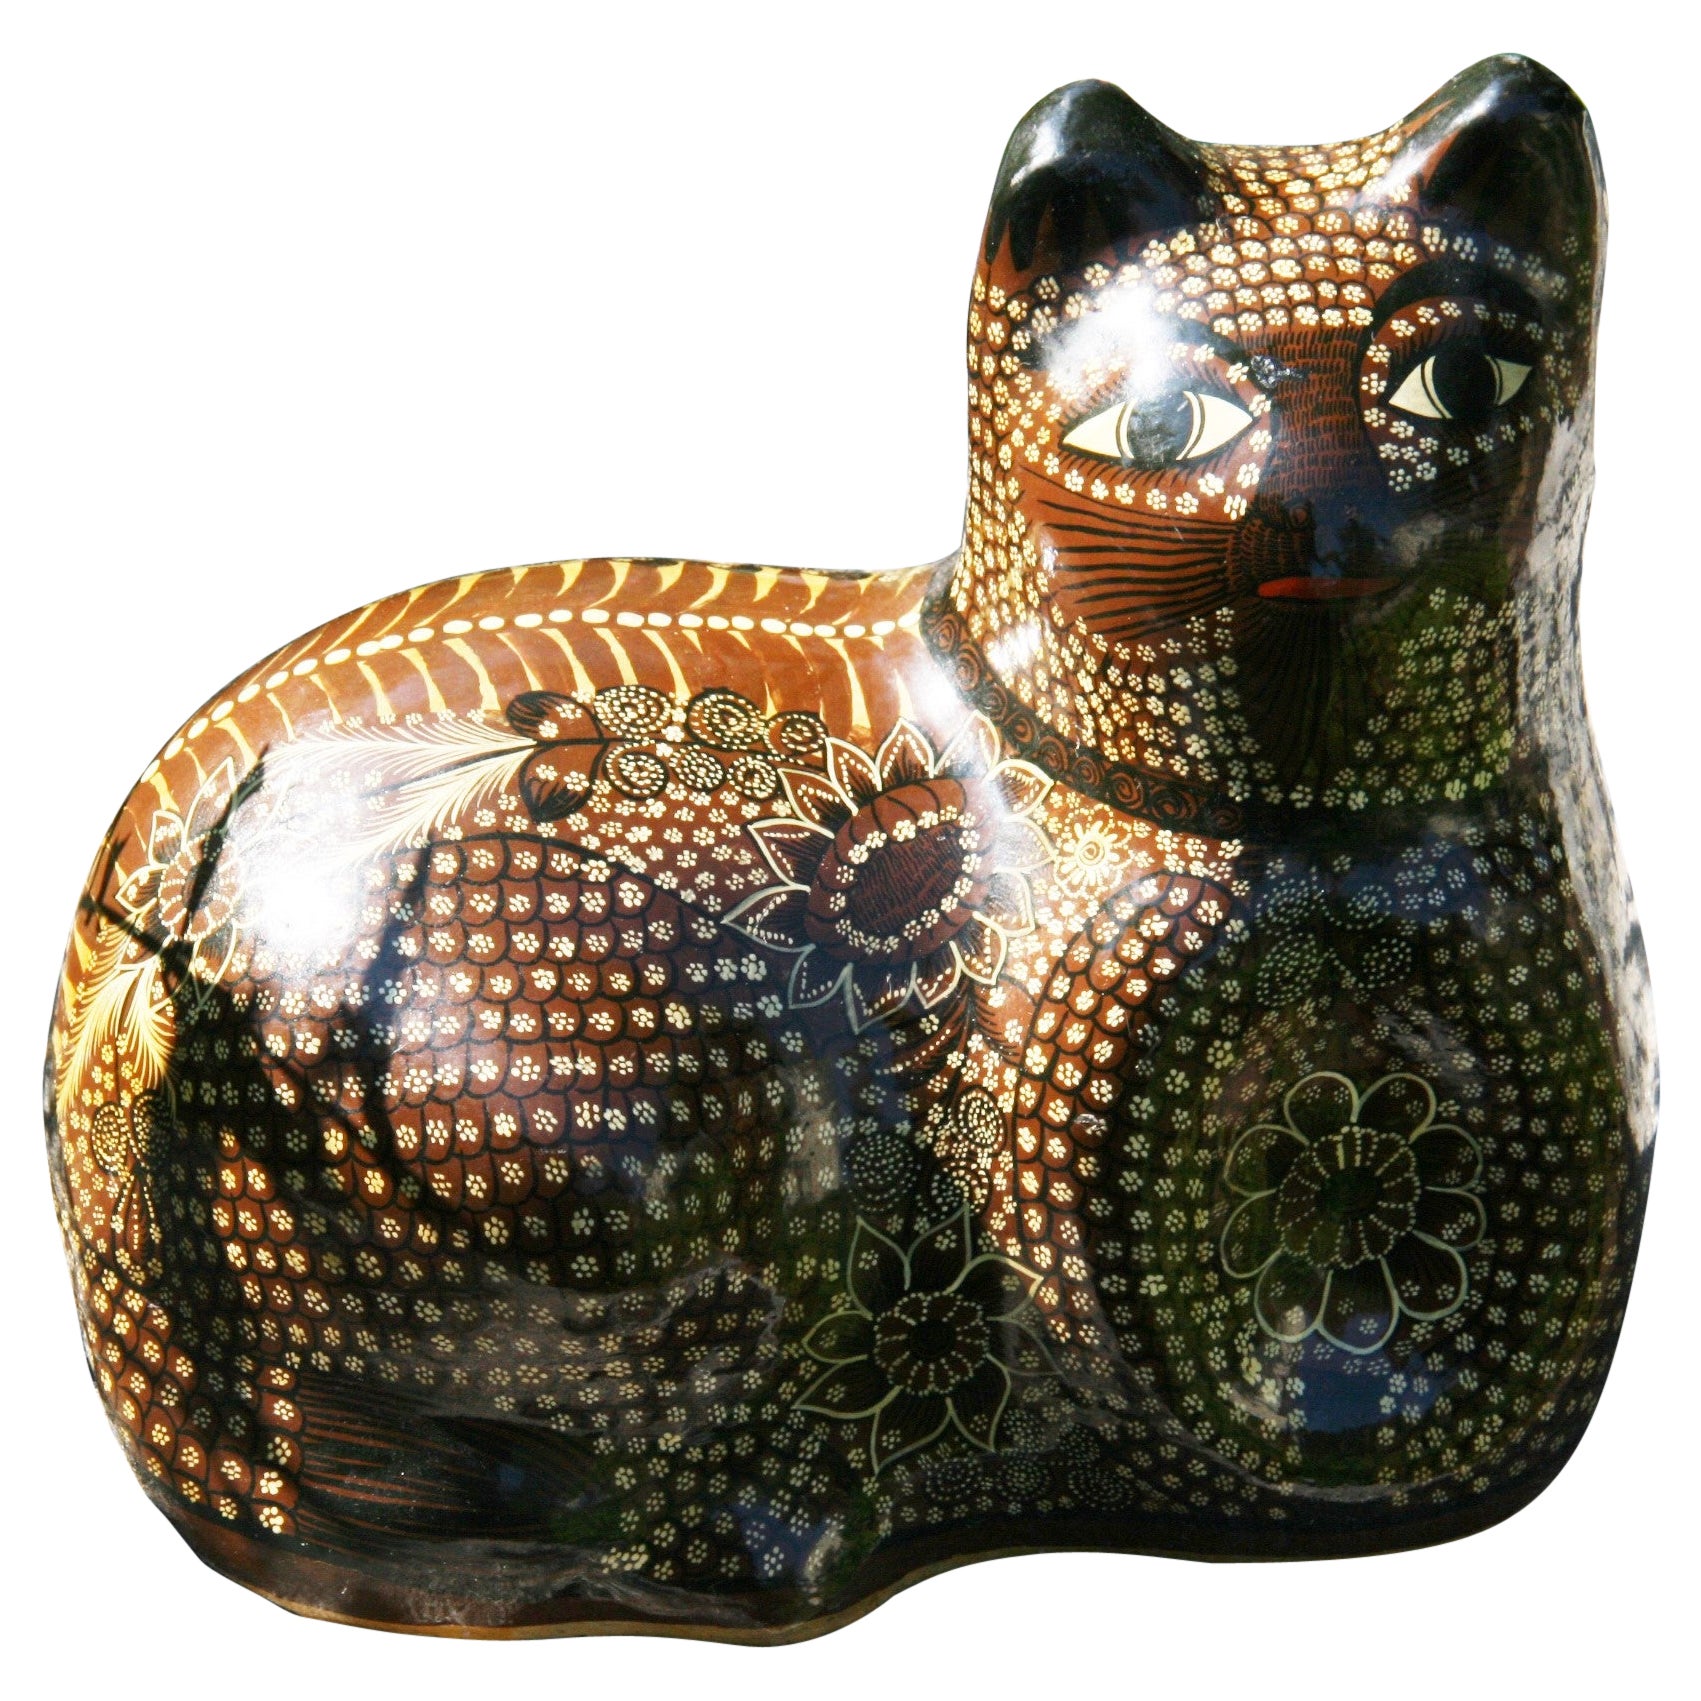 Japanese Hand Painted Ceramic Cat Sculpture